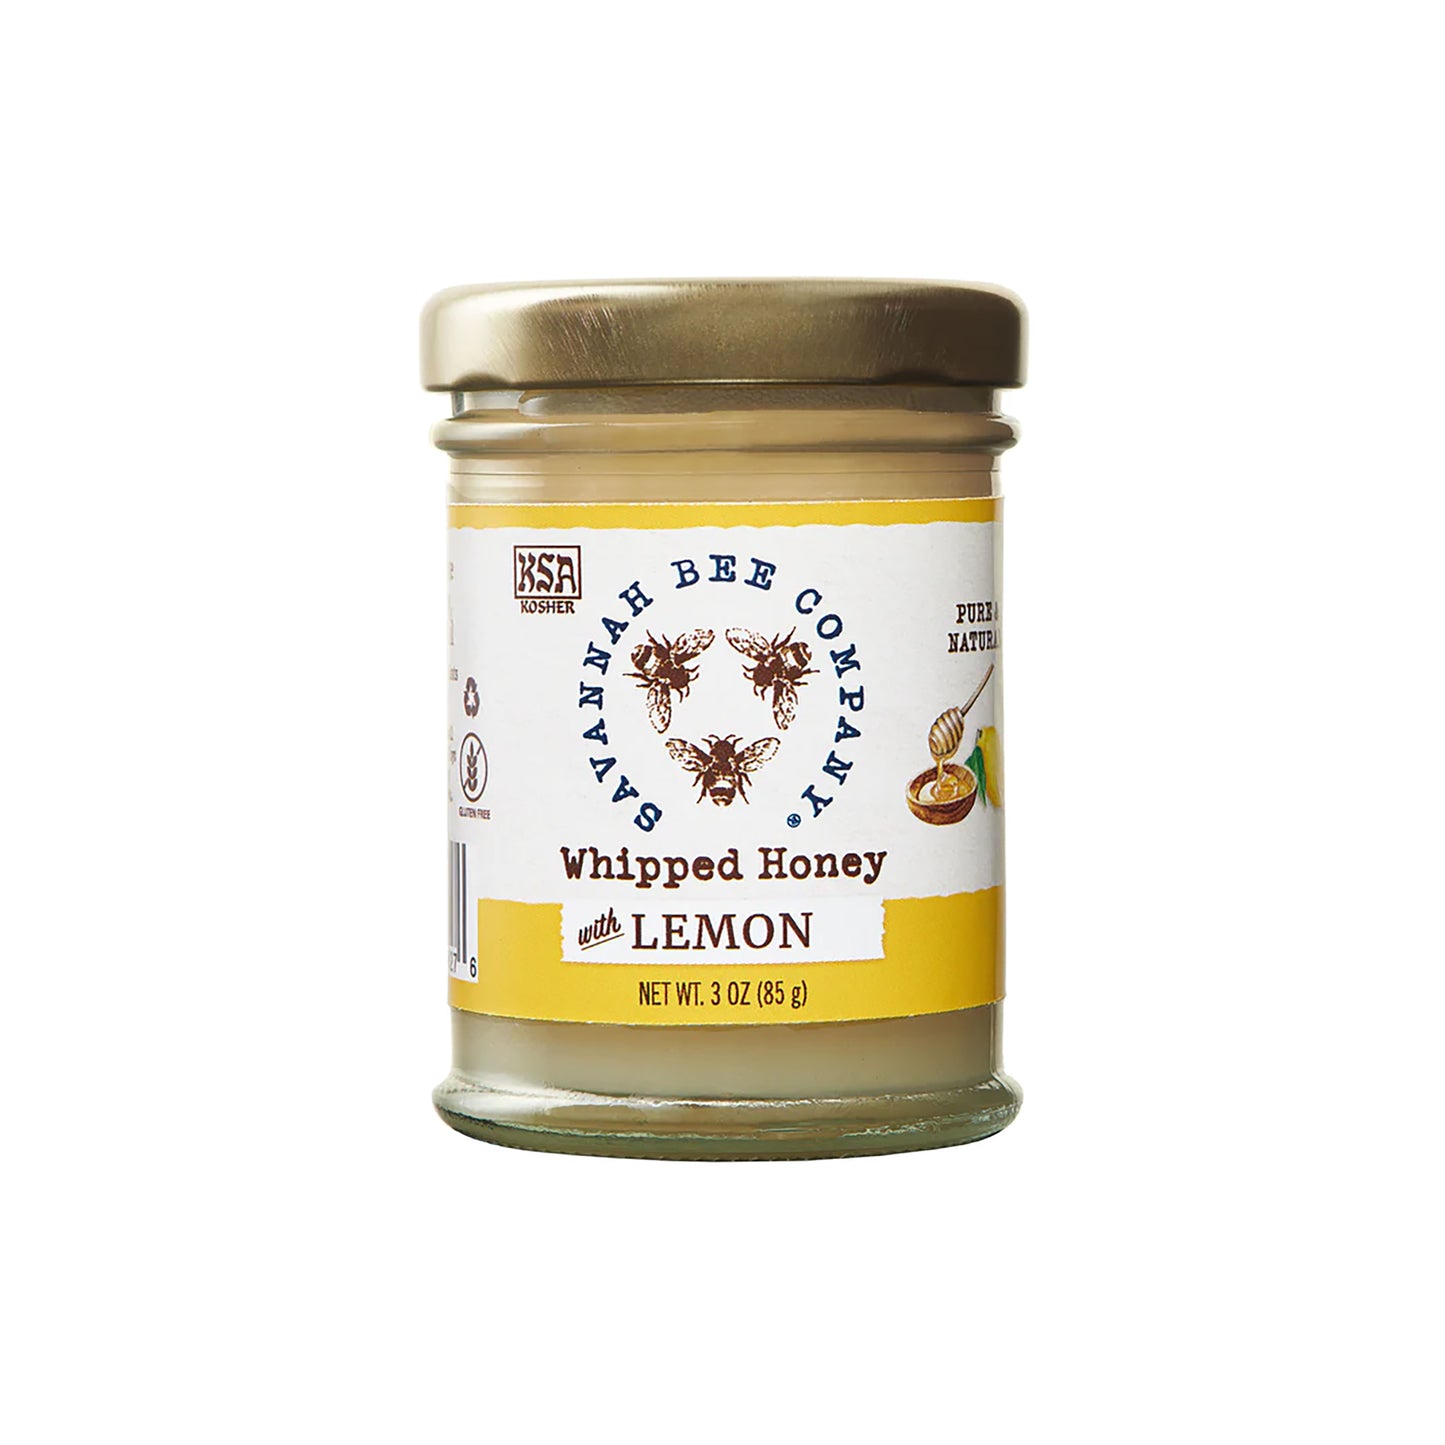 Whipped Honey with Lemon- 3 oz.